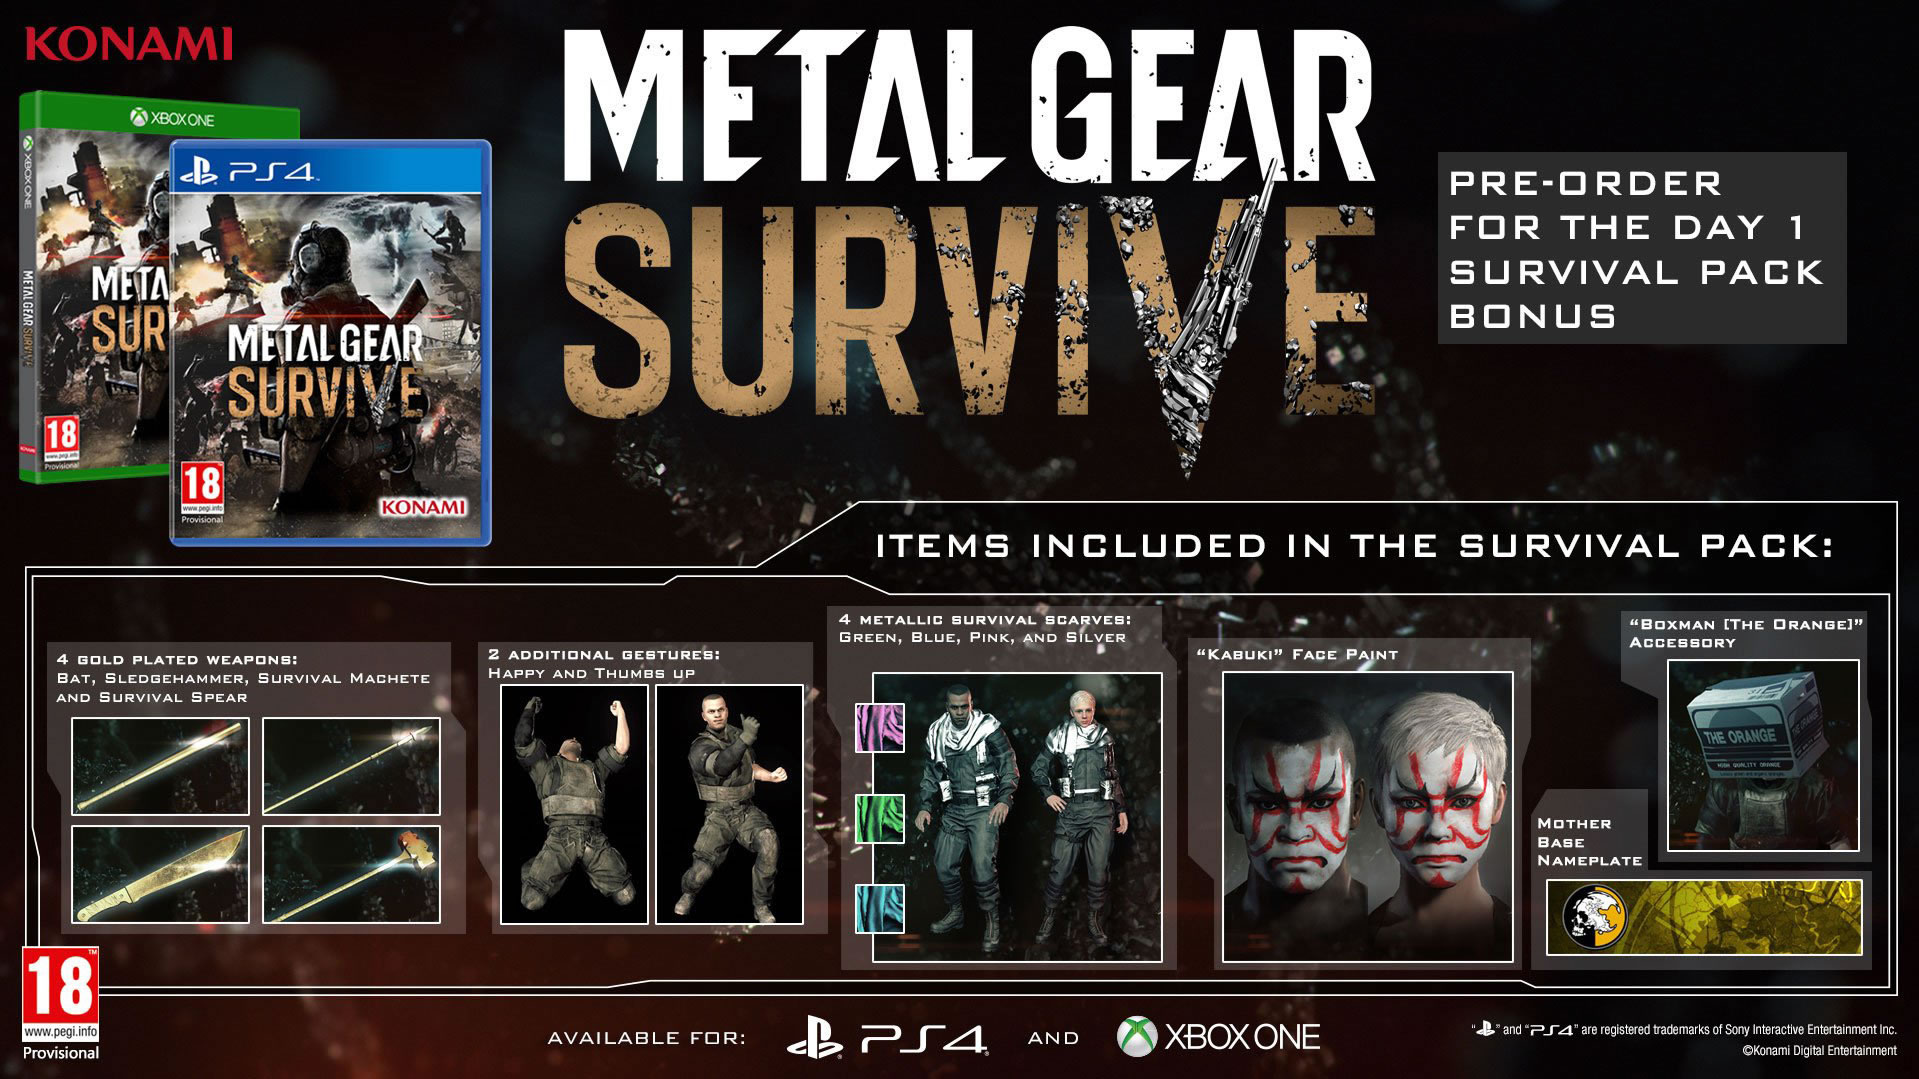 Nouvelles images de Metal Gear Survive qui sortira le 22 fvrier 2018 en Europe